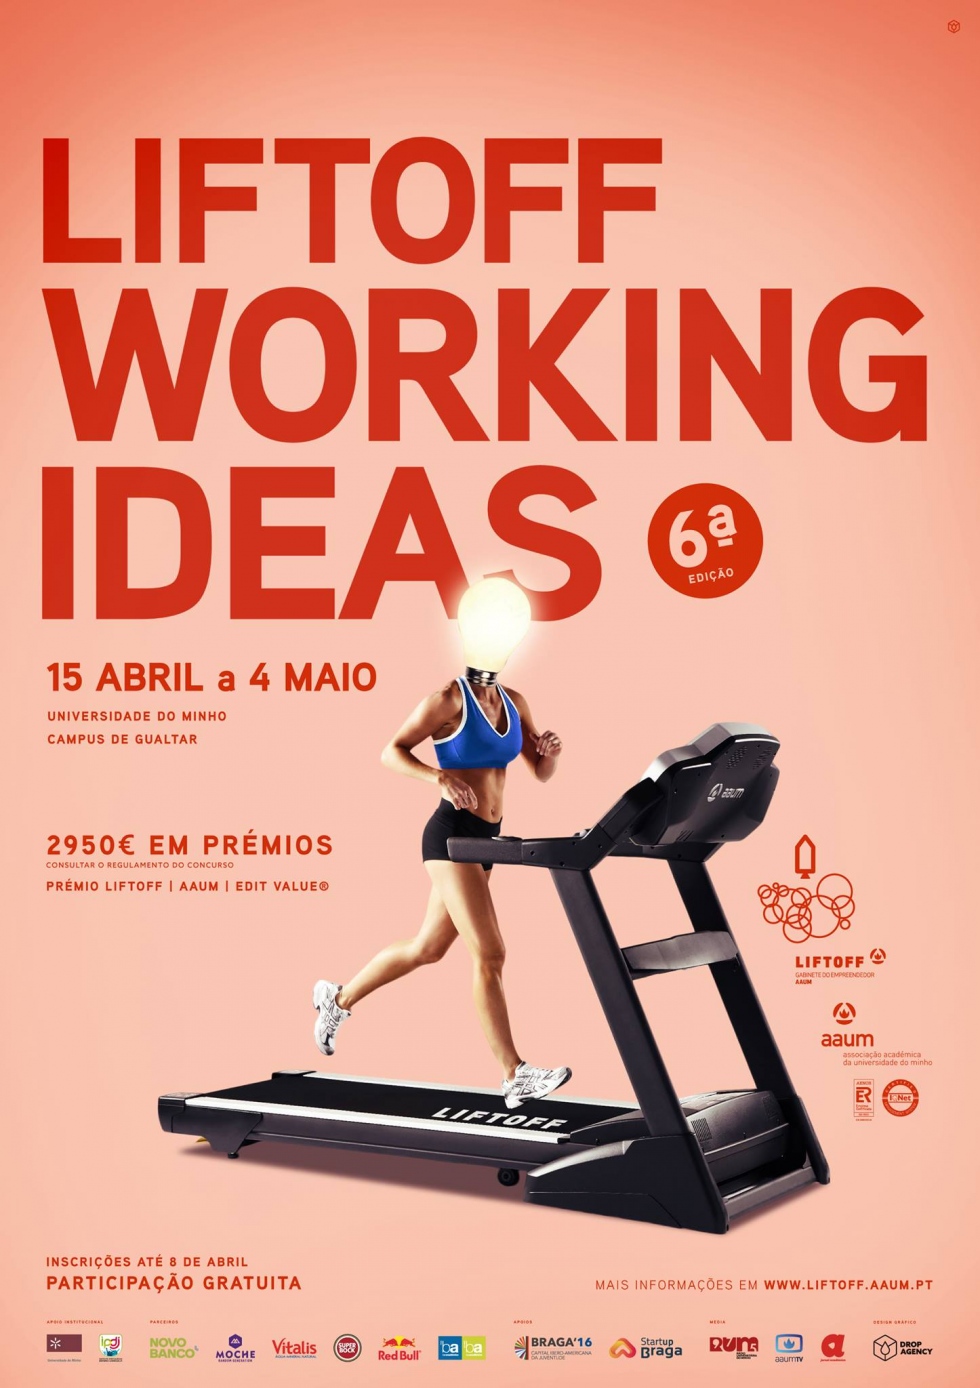 6.ª edição do Liftoff Working Ideas de 15 de abril a 4 de maio